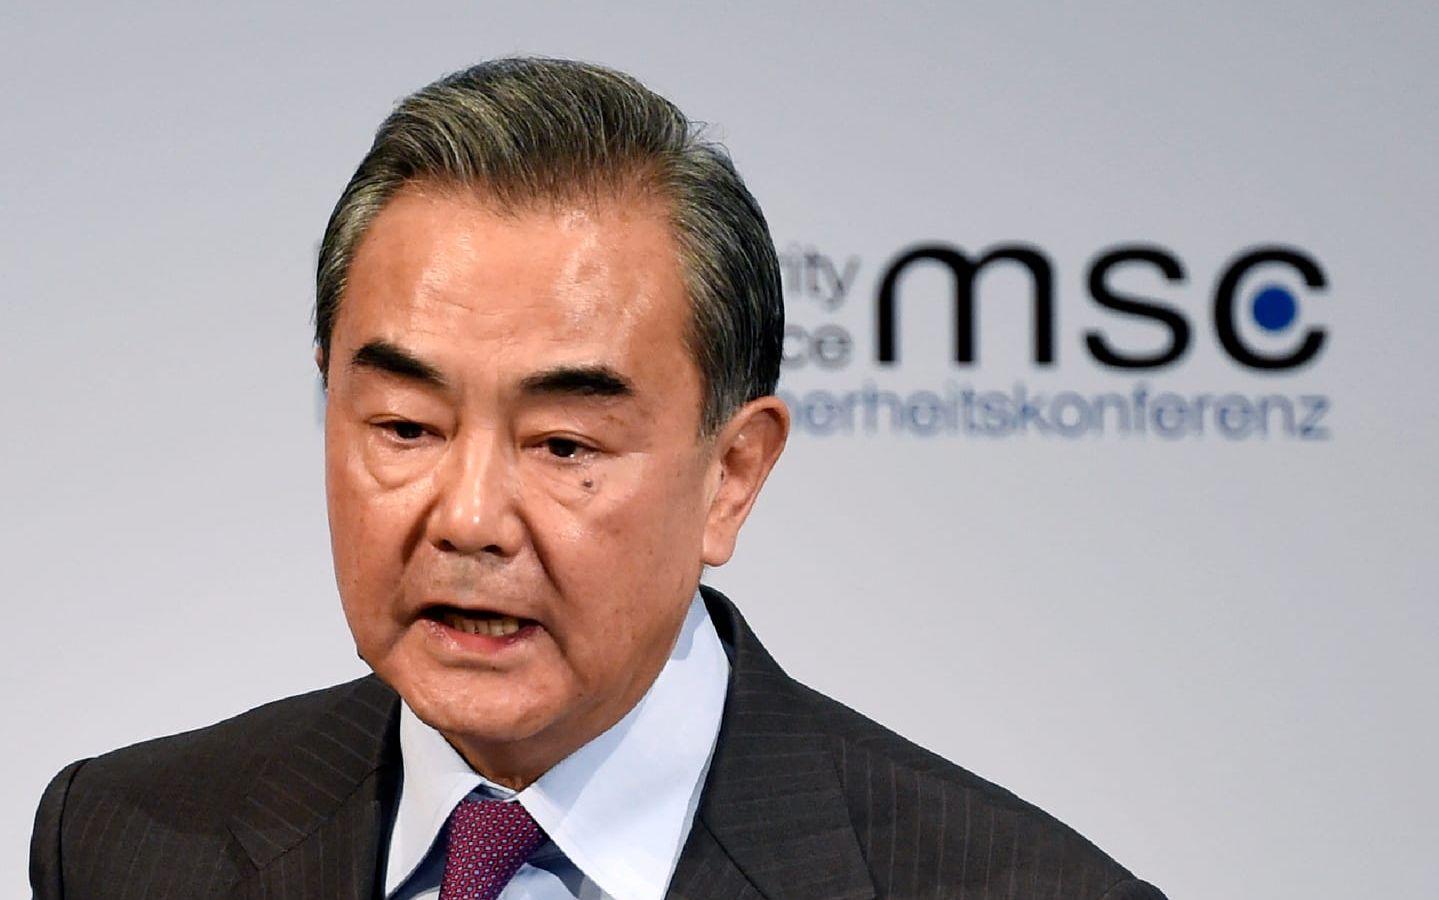 Wang Yi, utrikespolitisk talesperson för Kina, väntas medverka på säkerhetskonferensen i München.